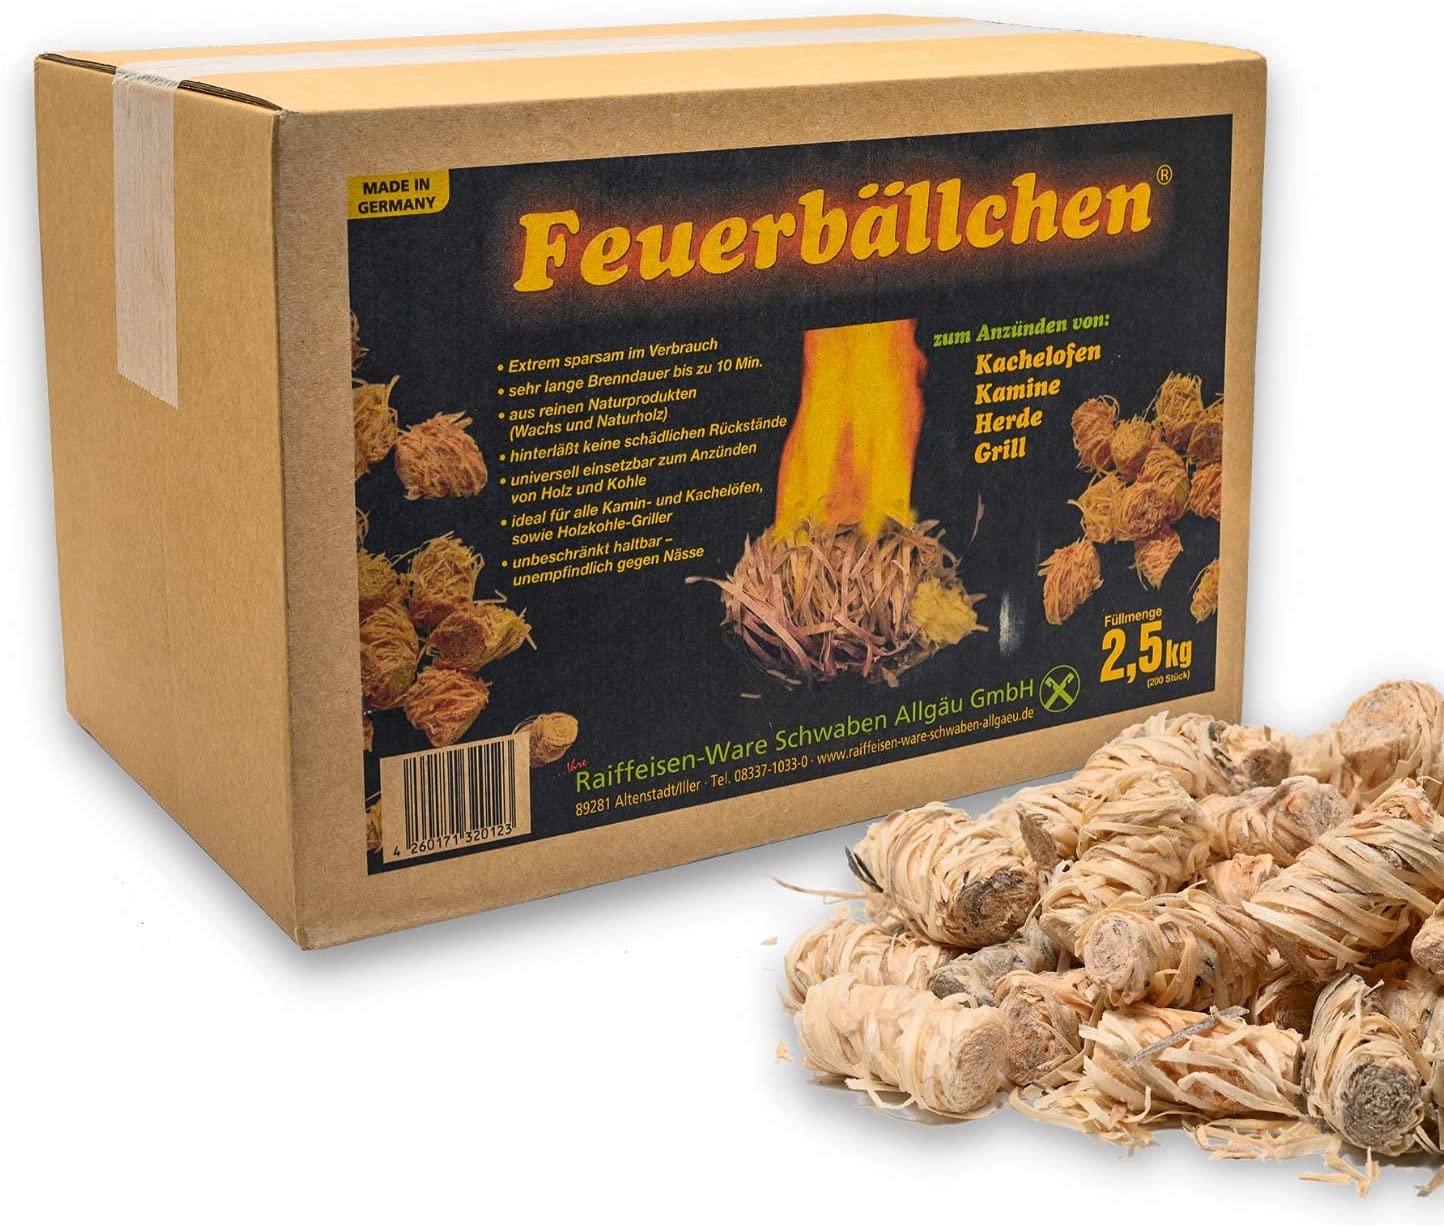 Feuerbällchen zum Anzünden von Kachelofen, Kamin, Herd, Grill, Lagerfeuer - aus reinen Naturprodukten - unempfindlich gegen Nässe - Made in Germany - 2,5 kg Schachtel (ca. 200 Stück)